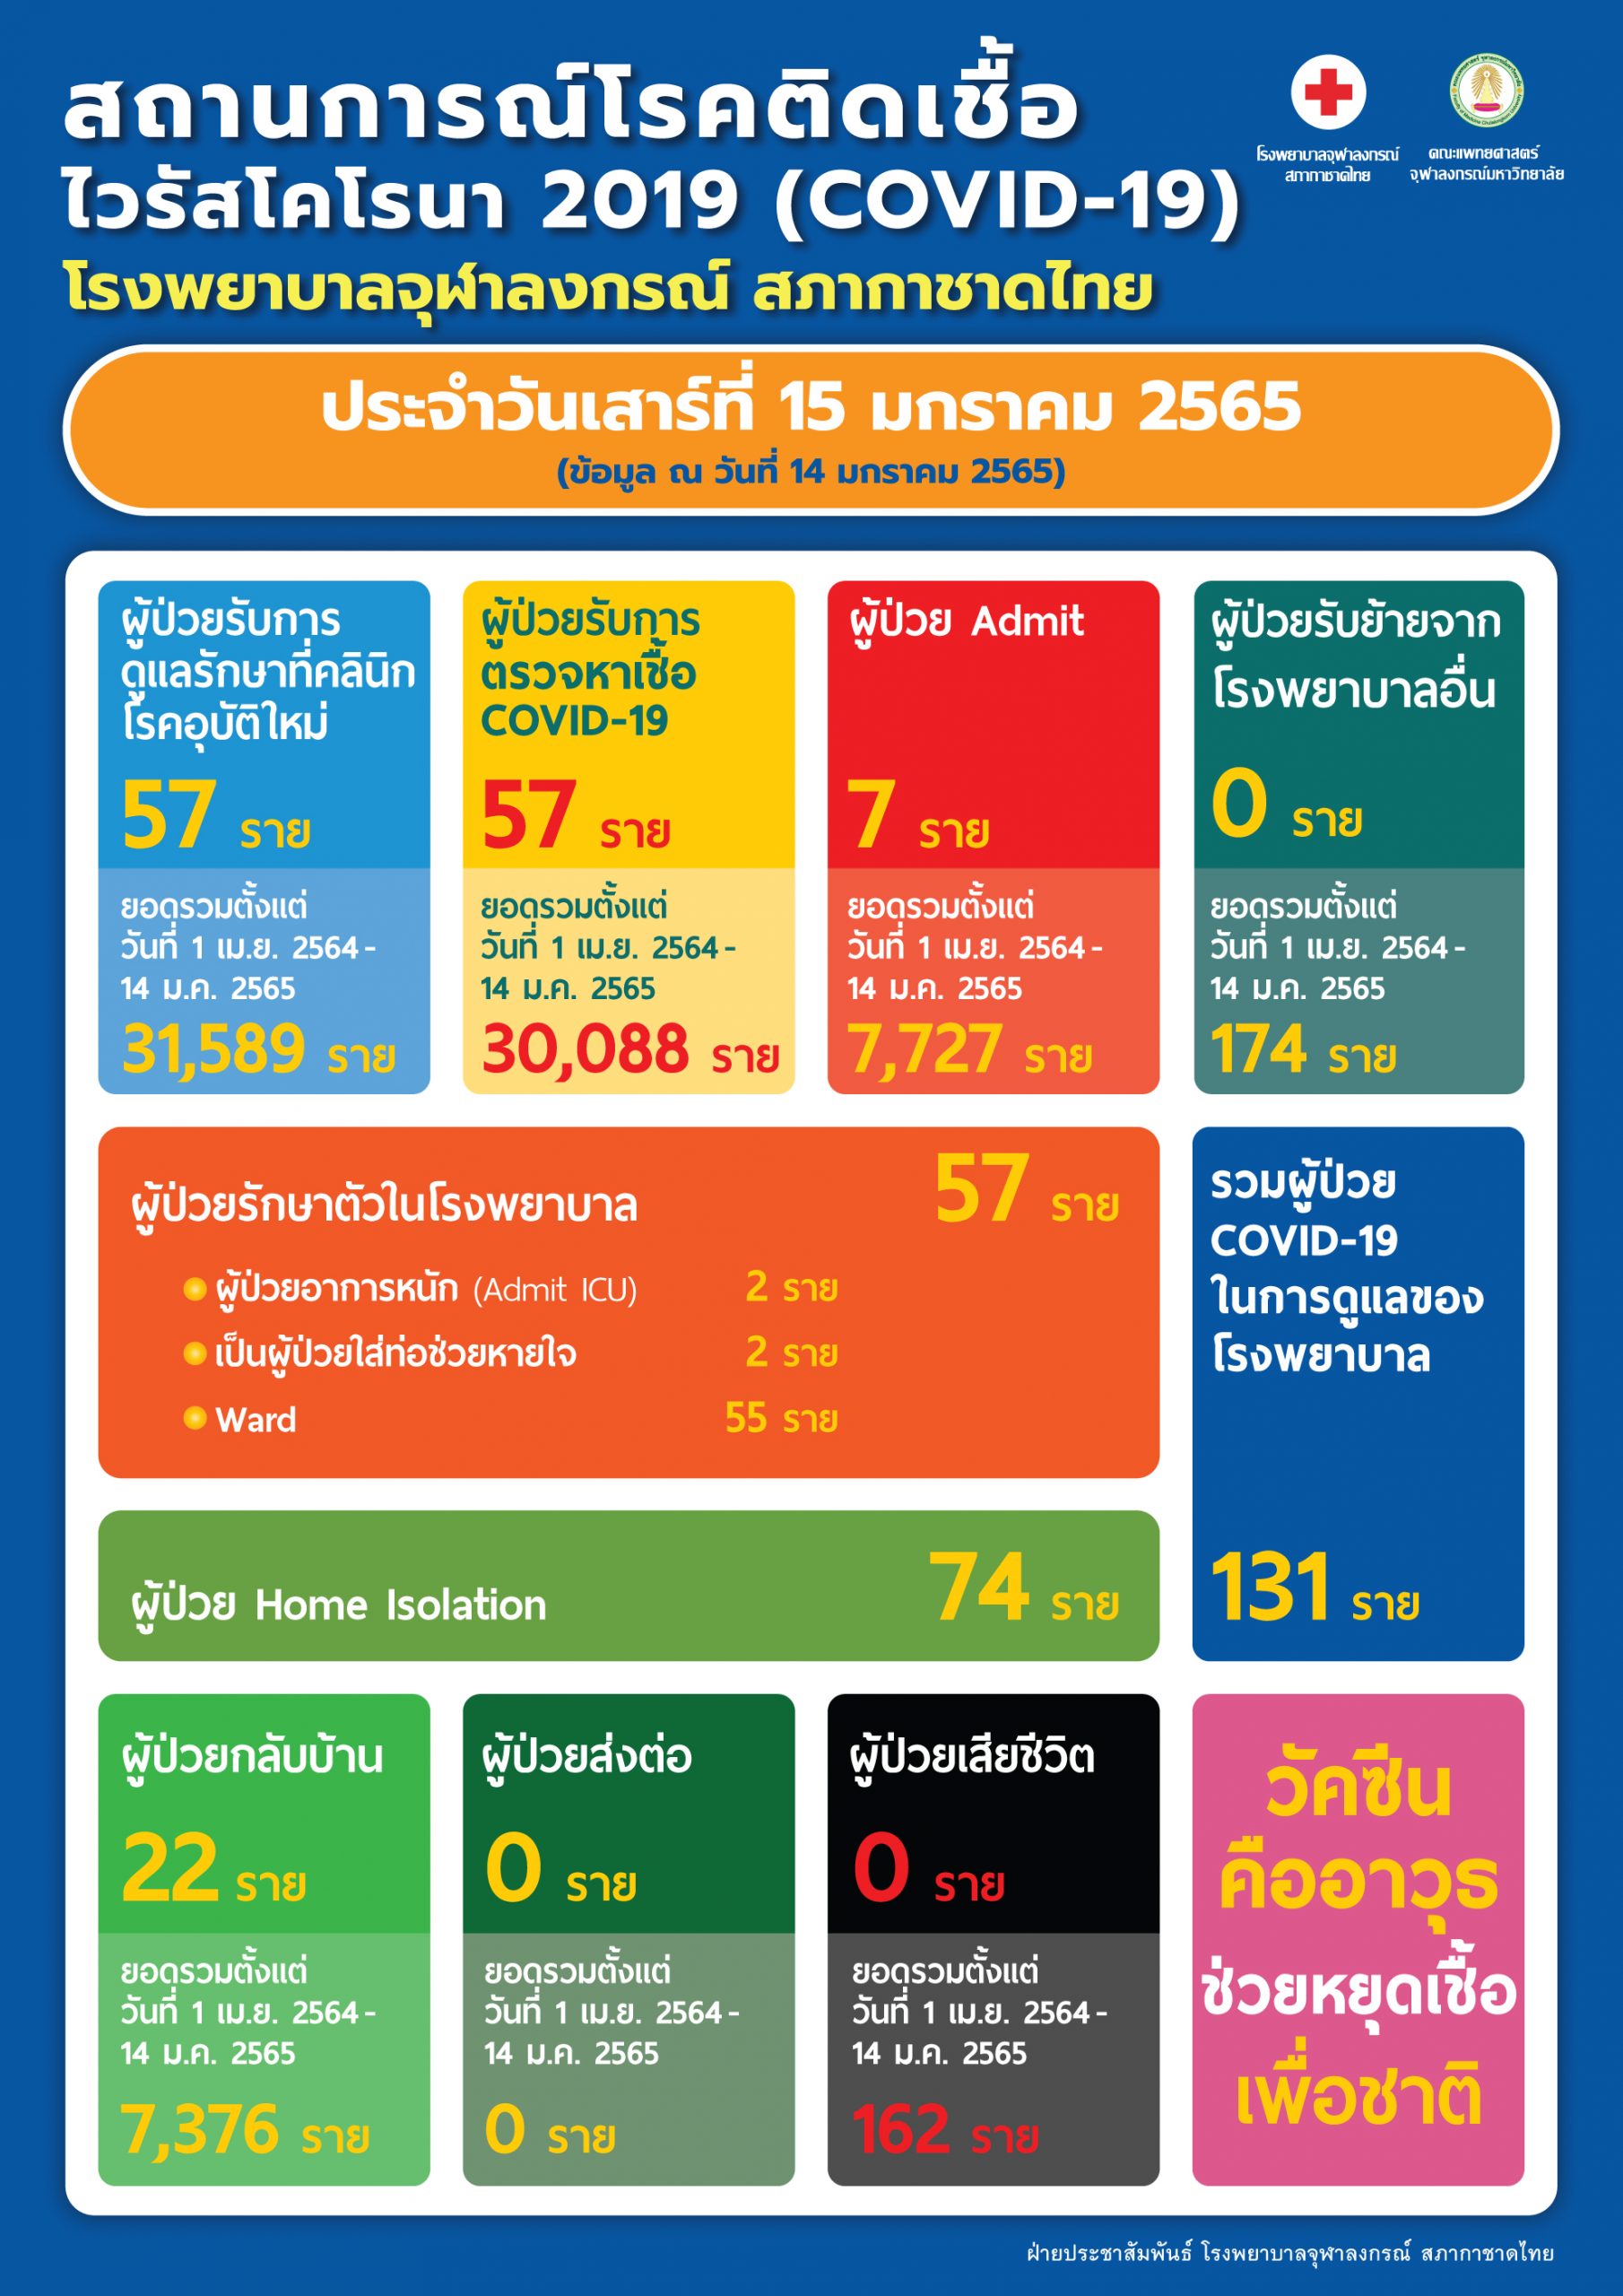 สถานการณ์โรคติดเชื้อไวรัสโคโรนา 2019 (COVID-19) โรงพยาบาลจุฬาลงกรณ์ สภากาชาดไทย ประจำวันเสาร์ที่ 15 มกราคม 2565